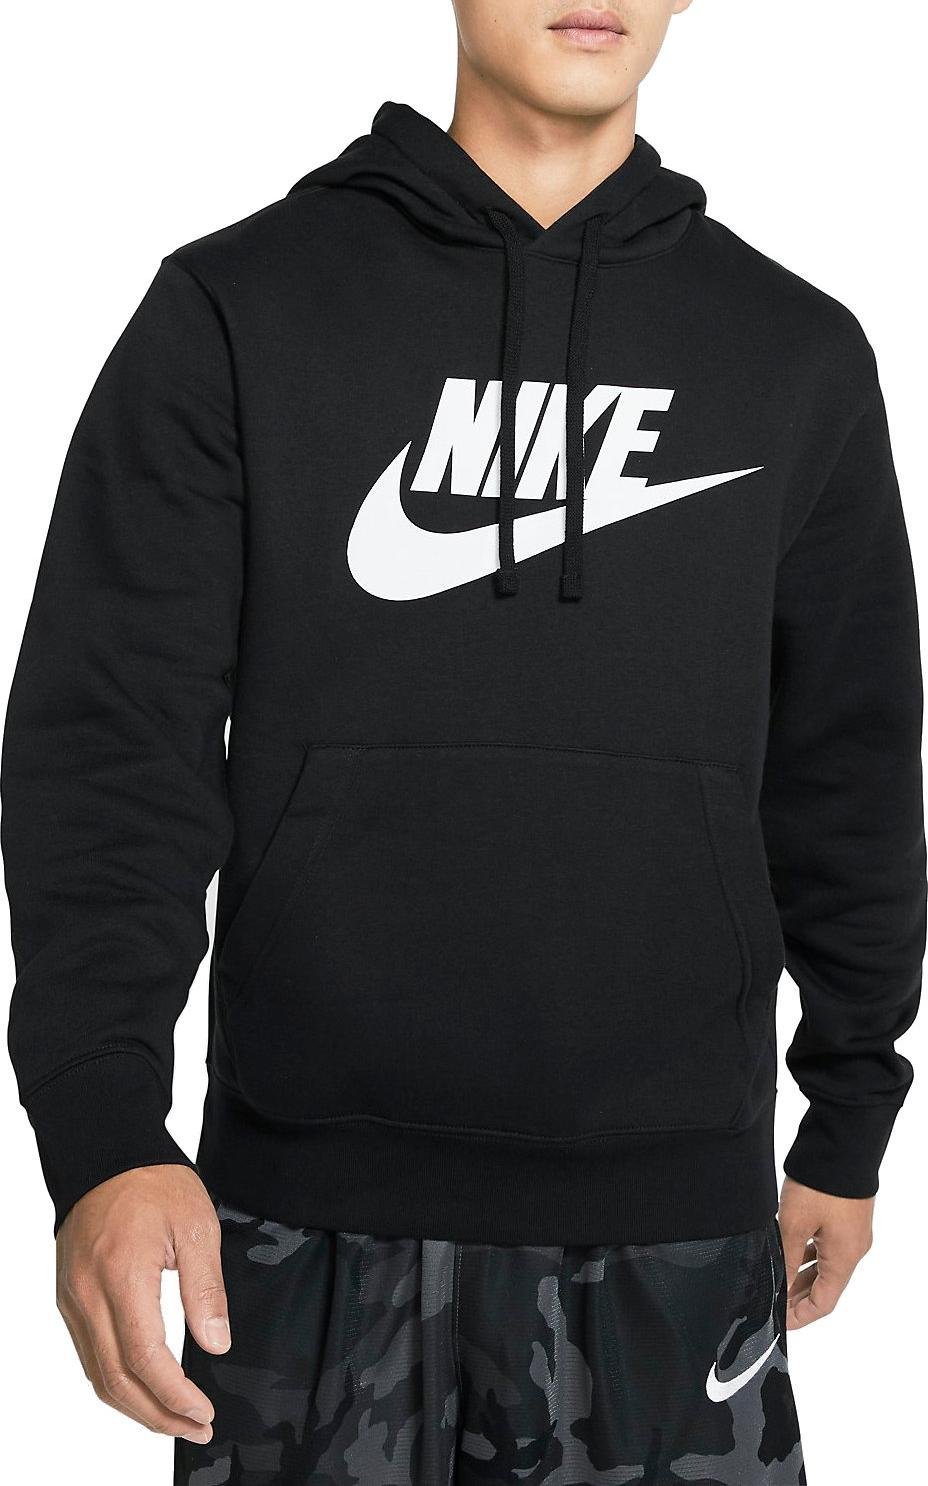 Pánská mikina s kapucí Nike Sportswear Fleece Club